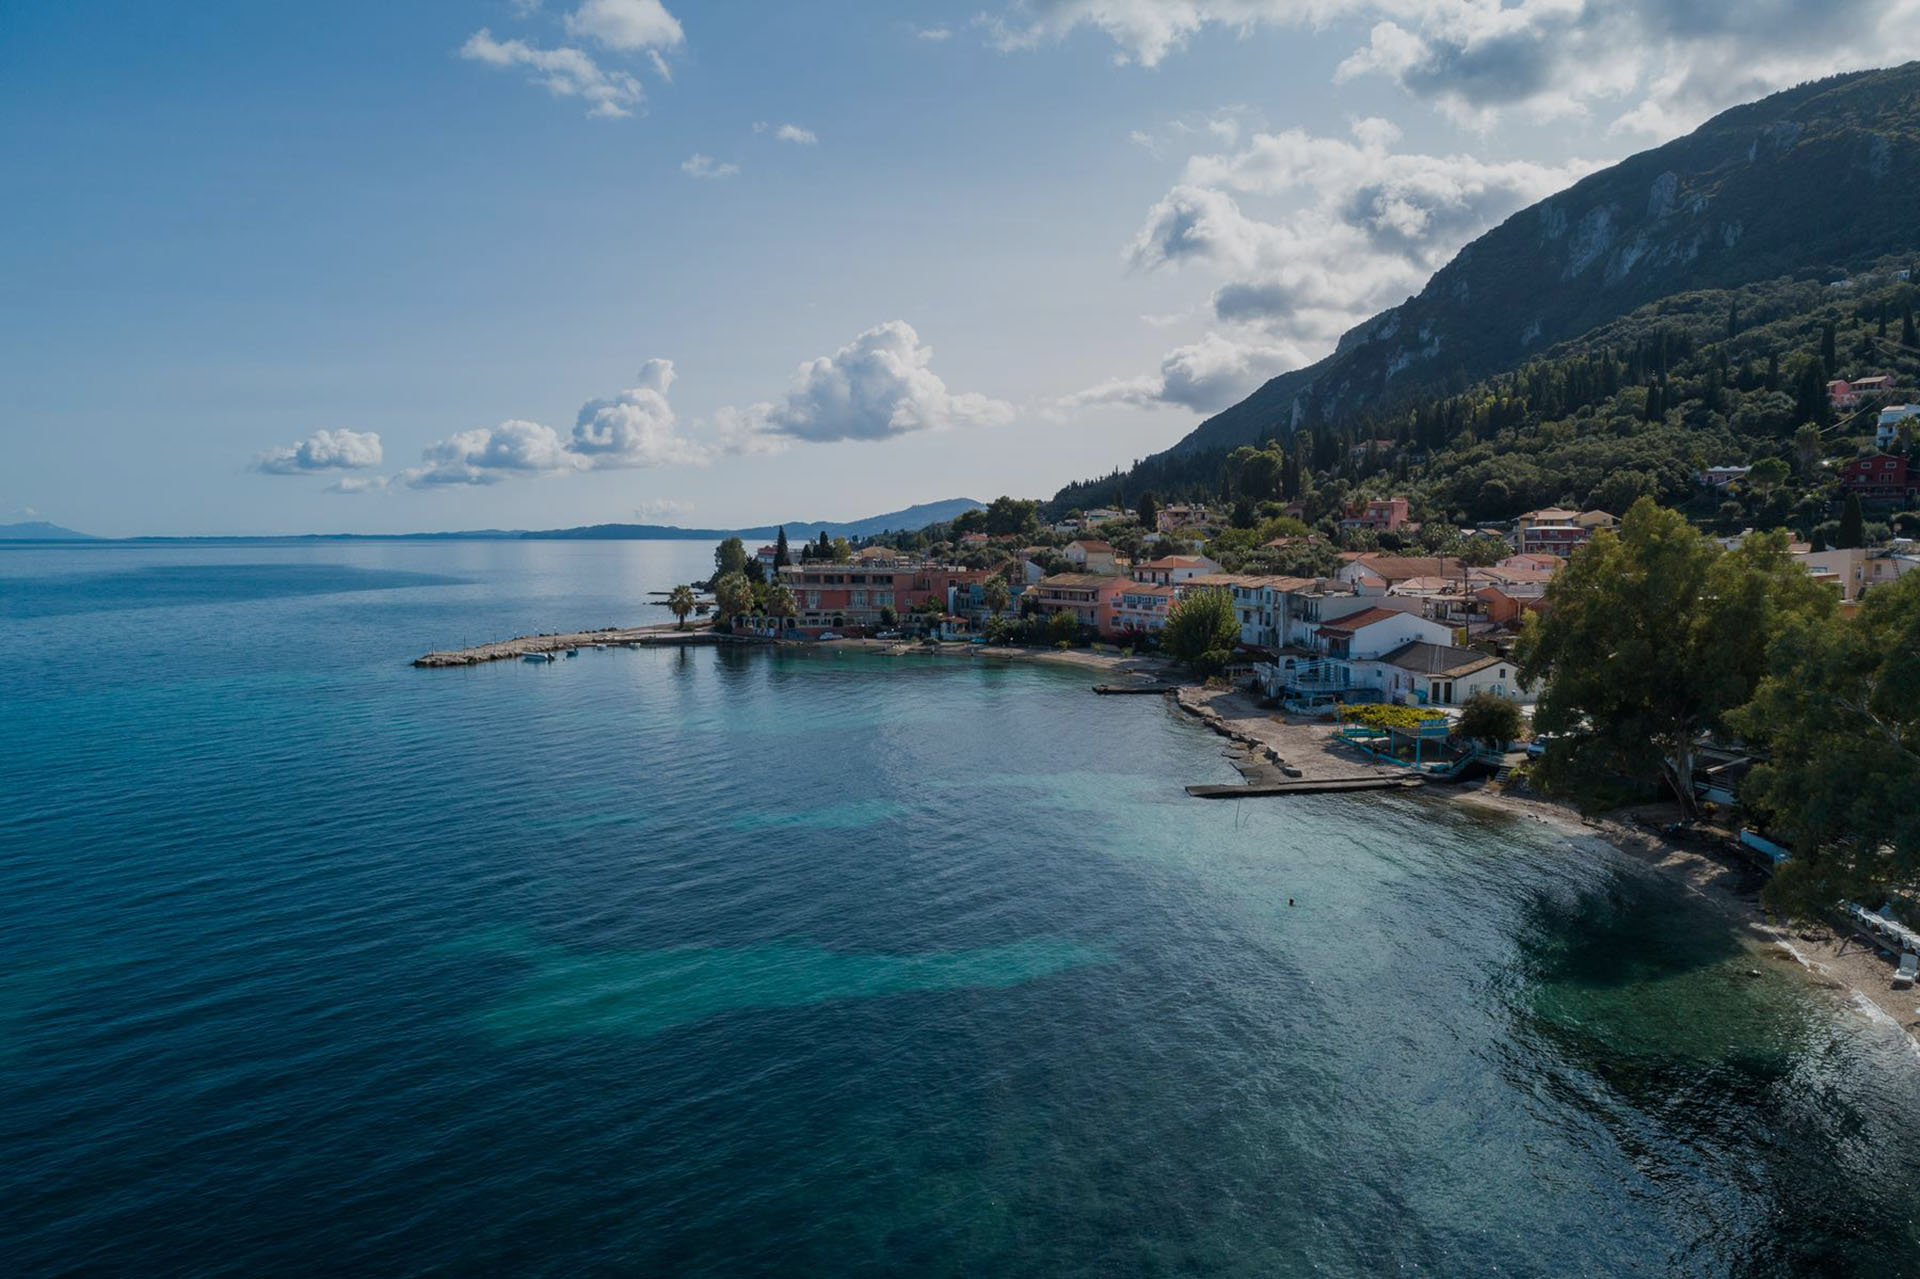 The Corfu island